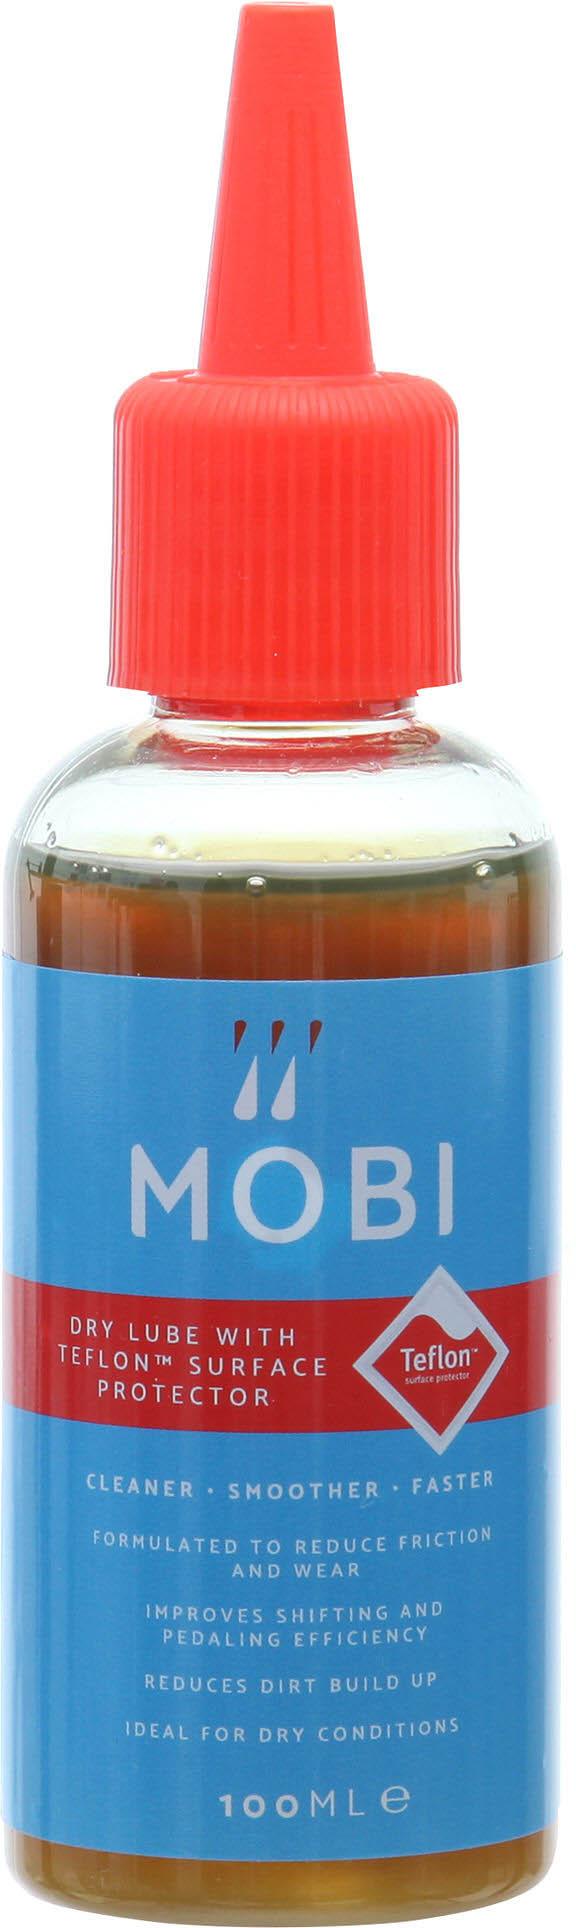 Mobi Dry Lube With Teflon 100ml - Neutral